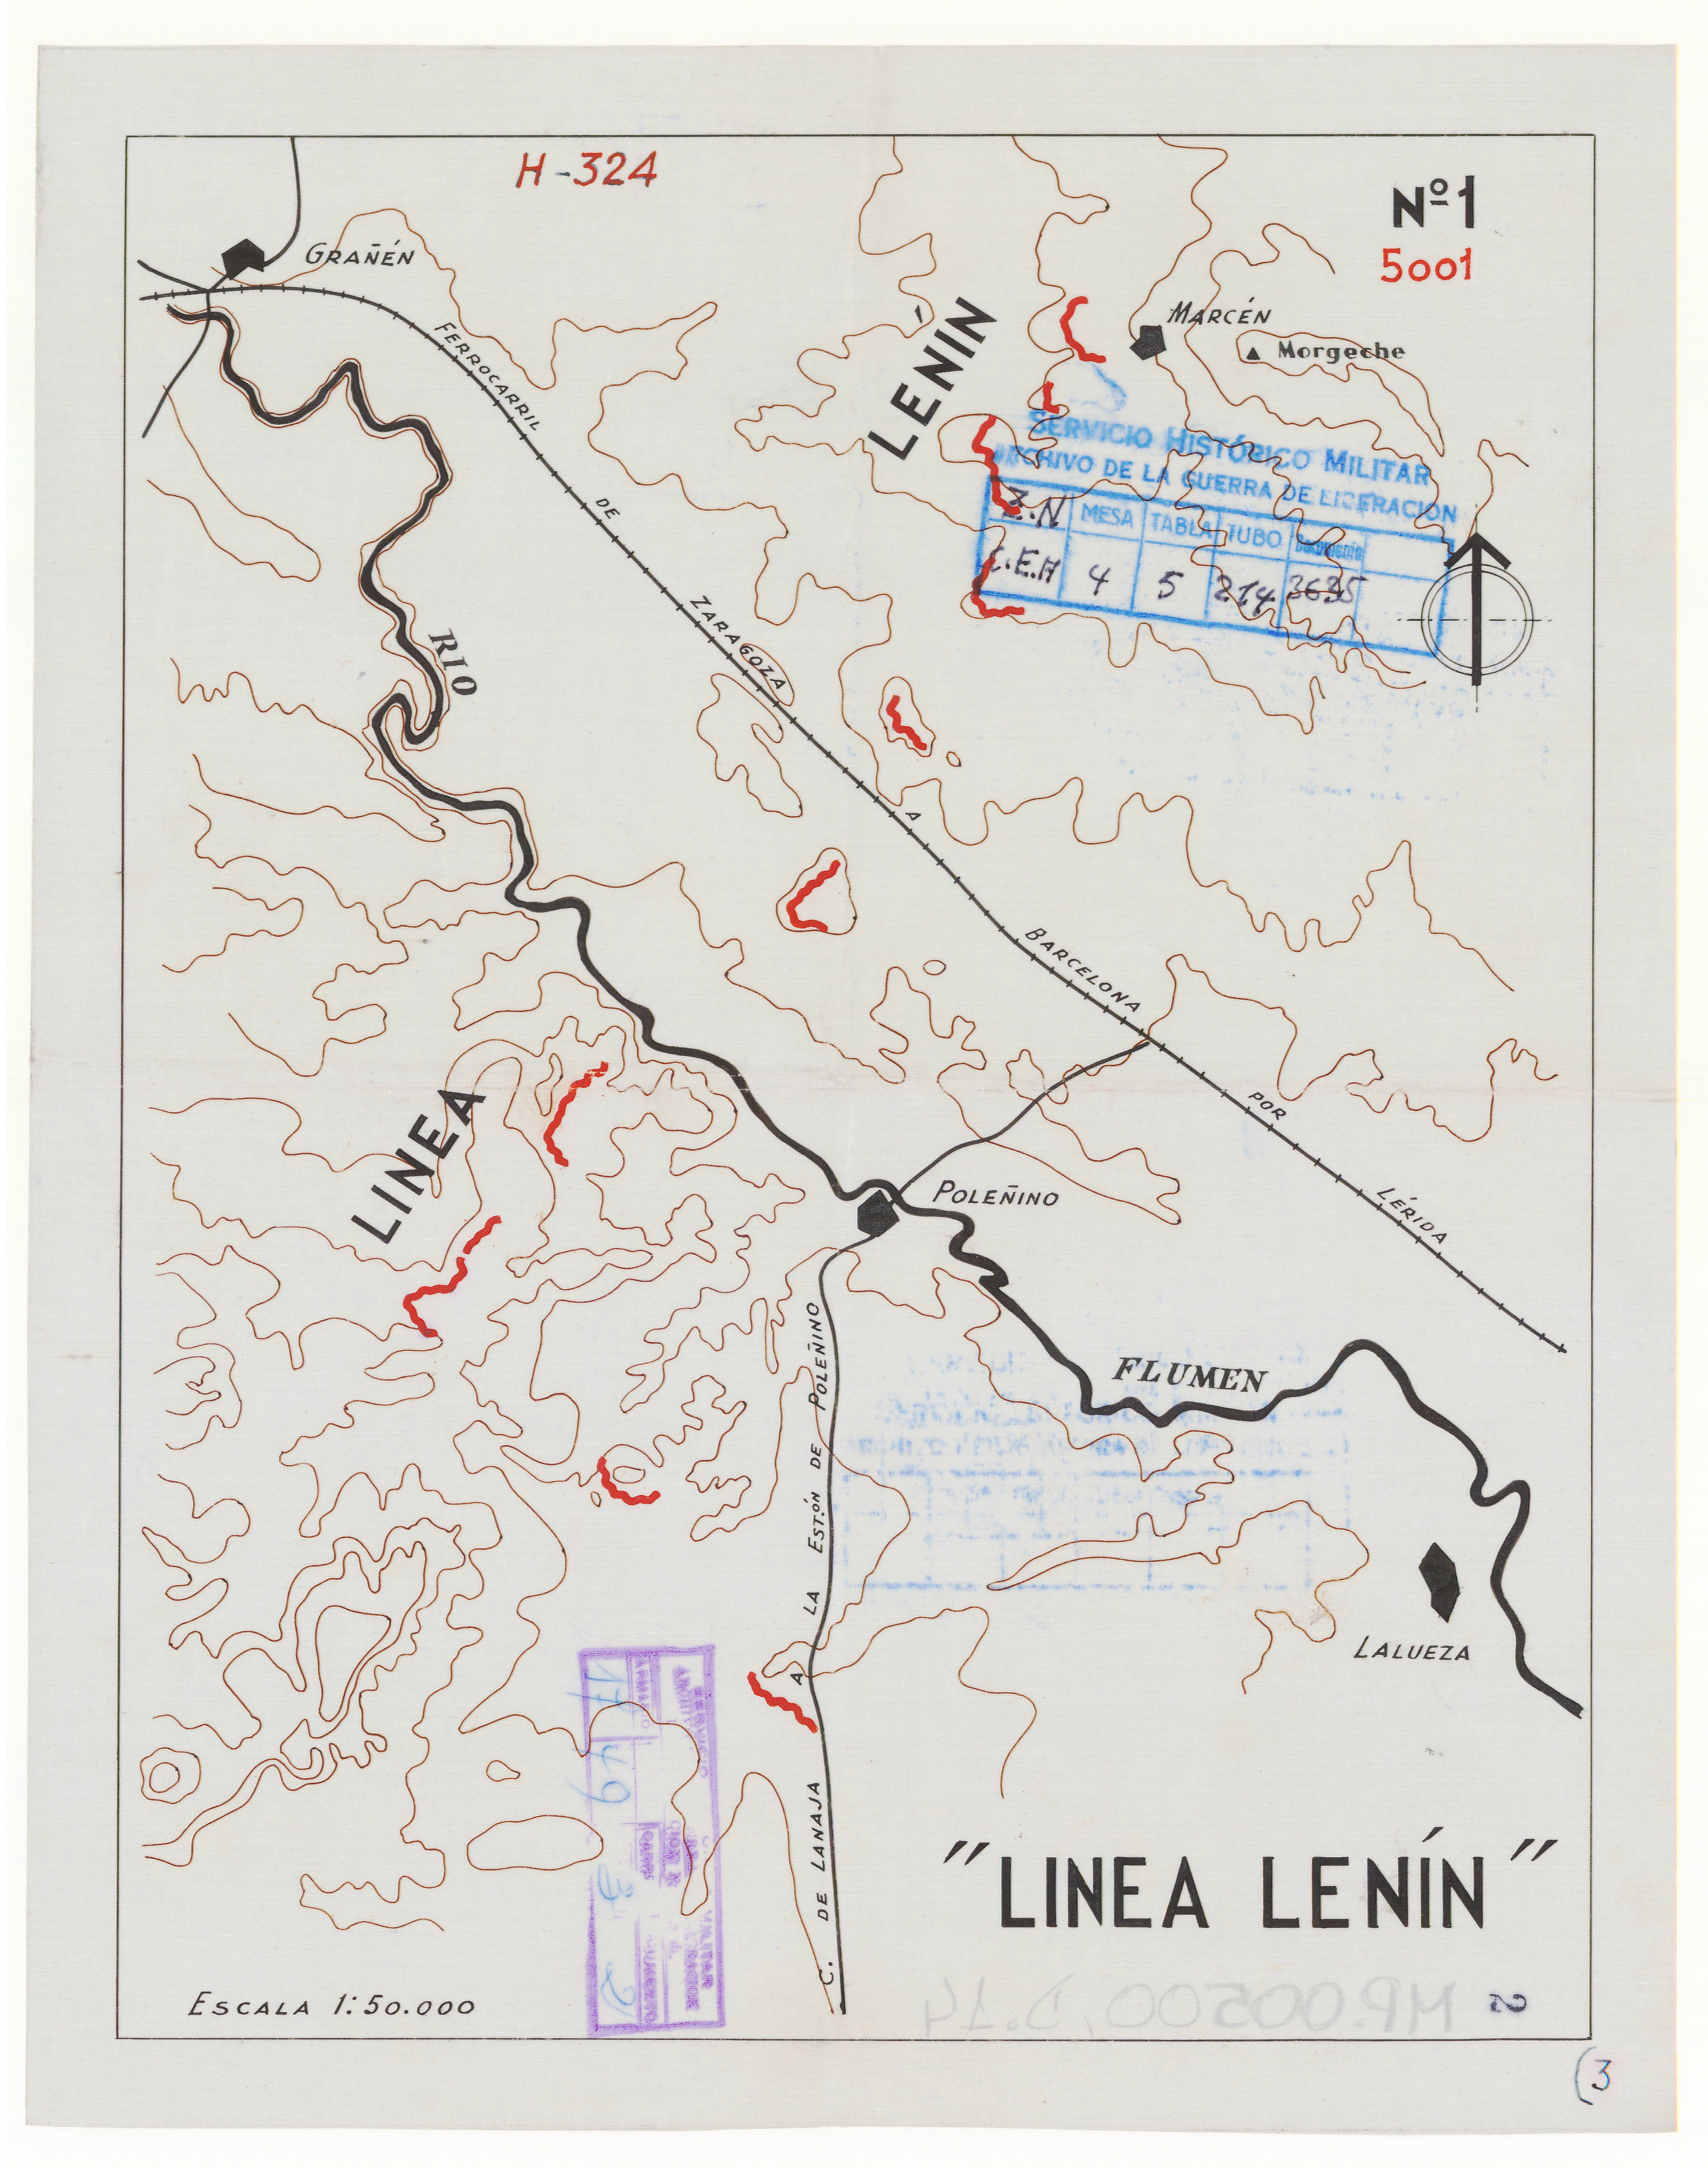 Línia Lenin